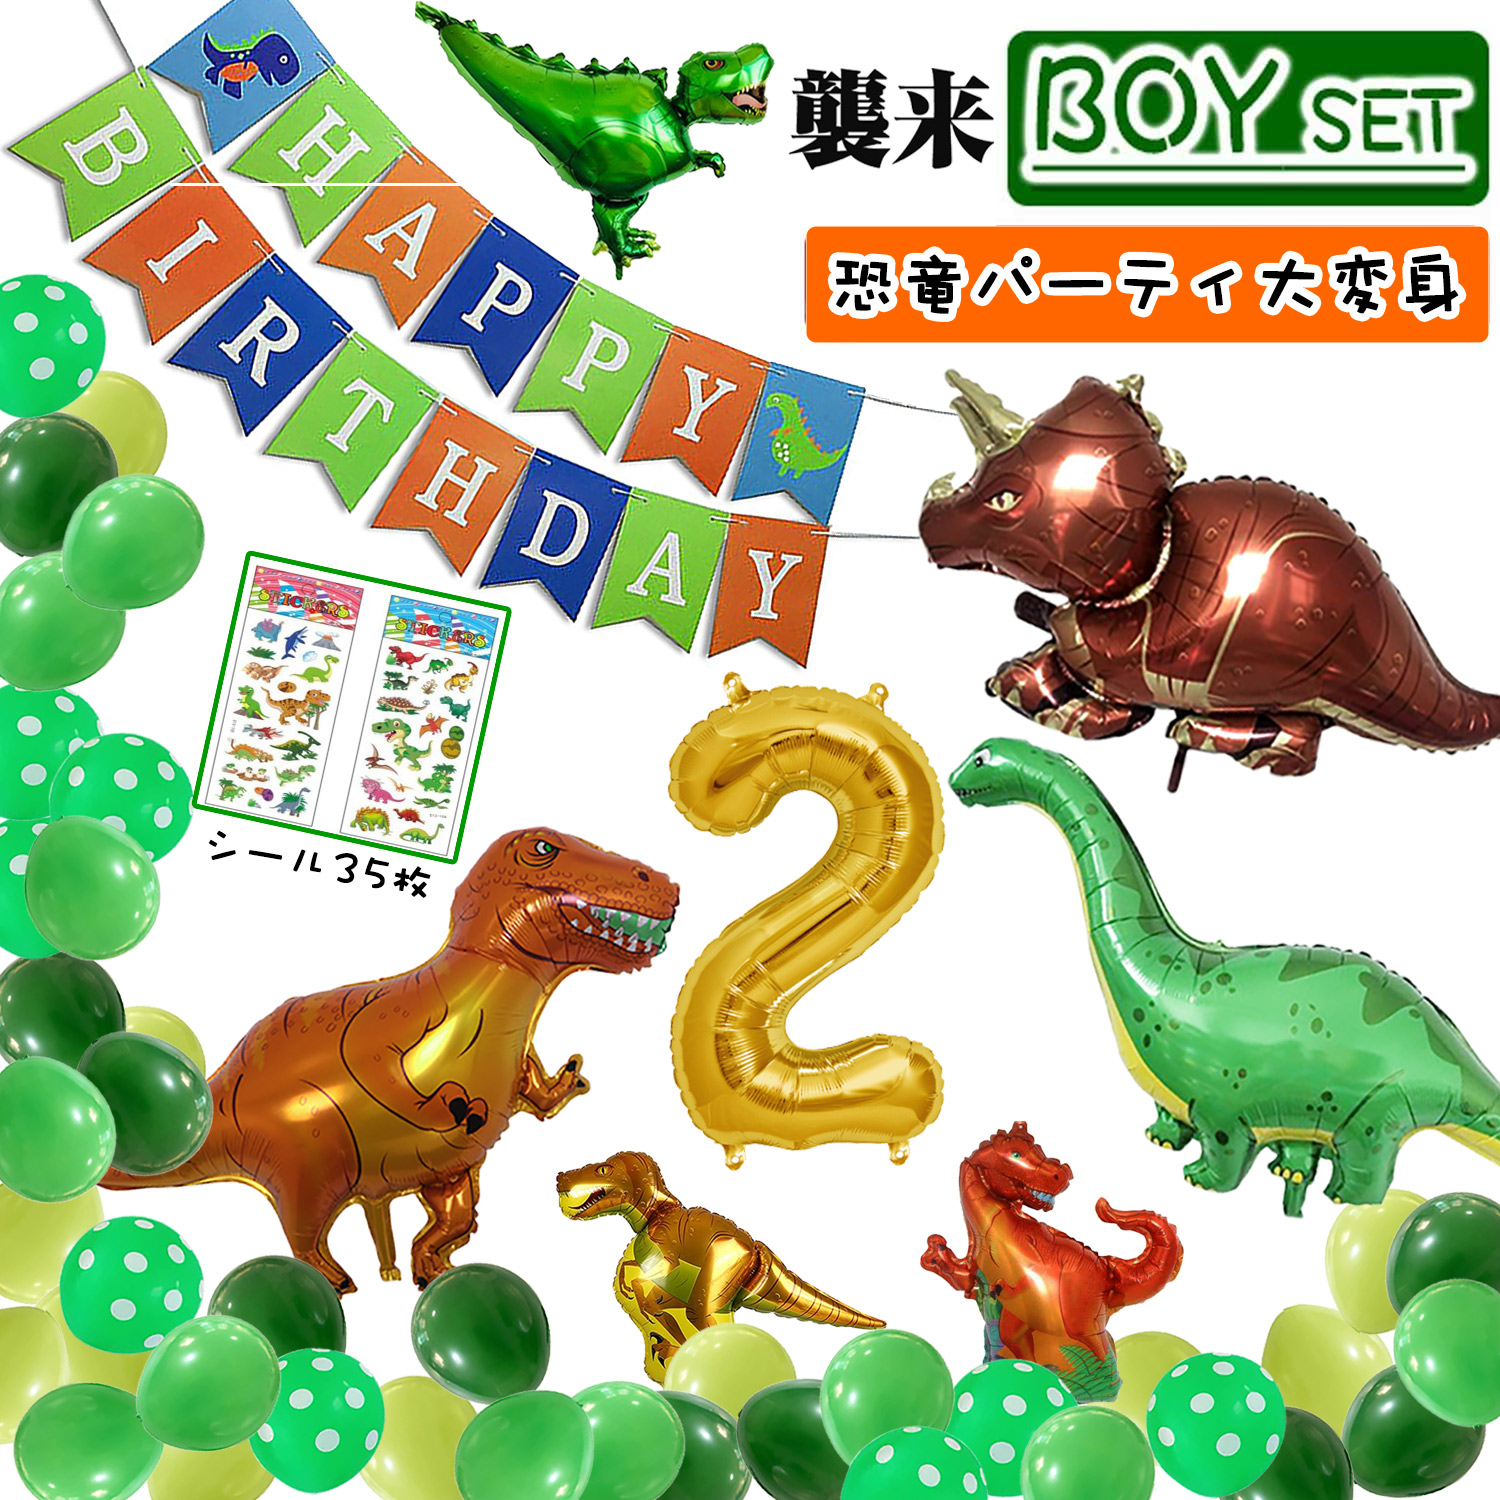 日本全国送料無料 3歳 バルーン 風船 飾り 乗り物 パトカー 消防車 恐竜 男の子 誕生日